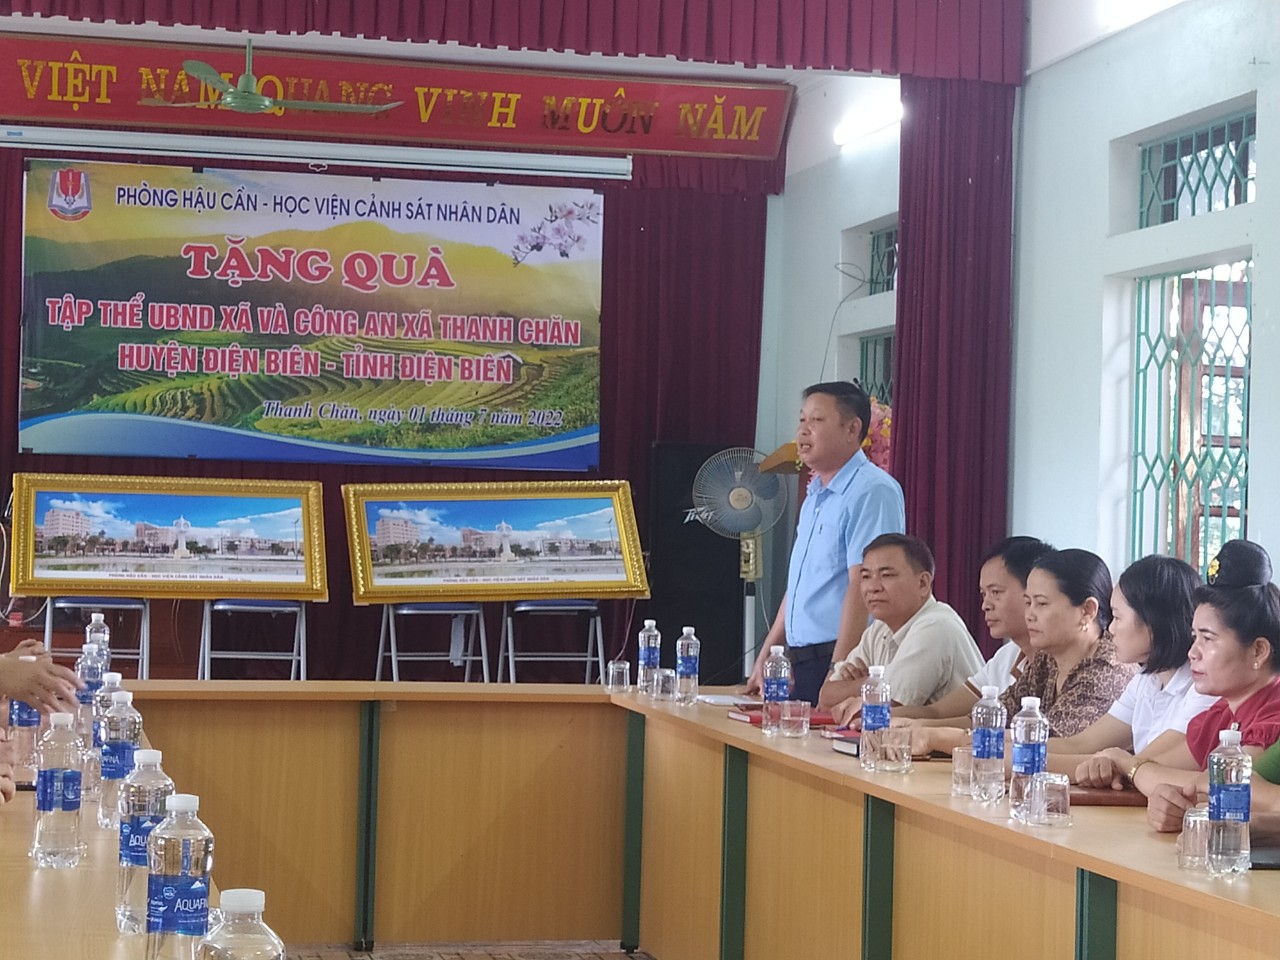 Đoàn làm việc với UBND xã và Ban Chỉ huy Công an xã Thanh Chăn, huyện Điện Biên